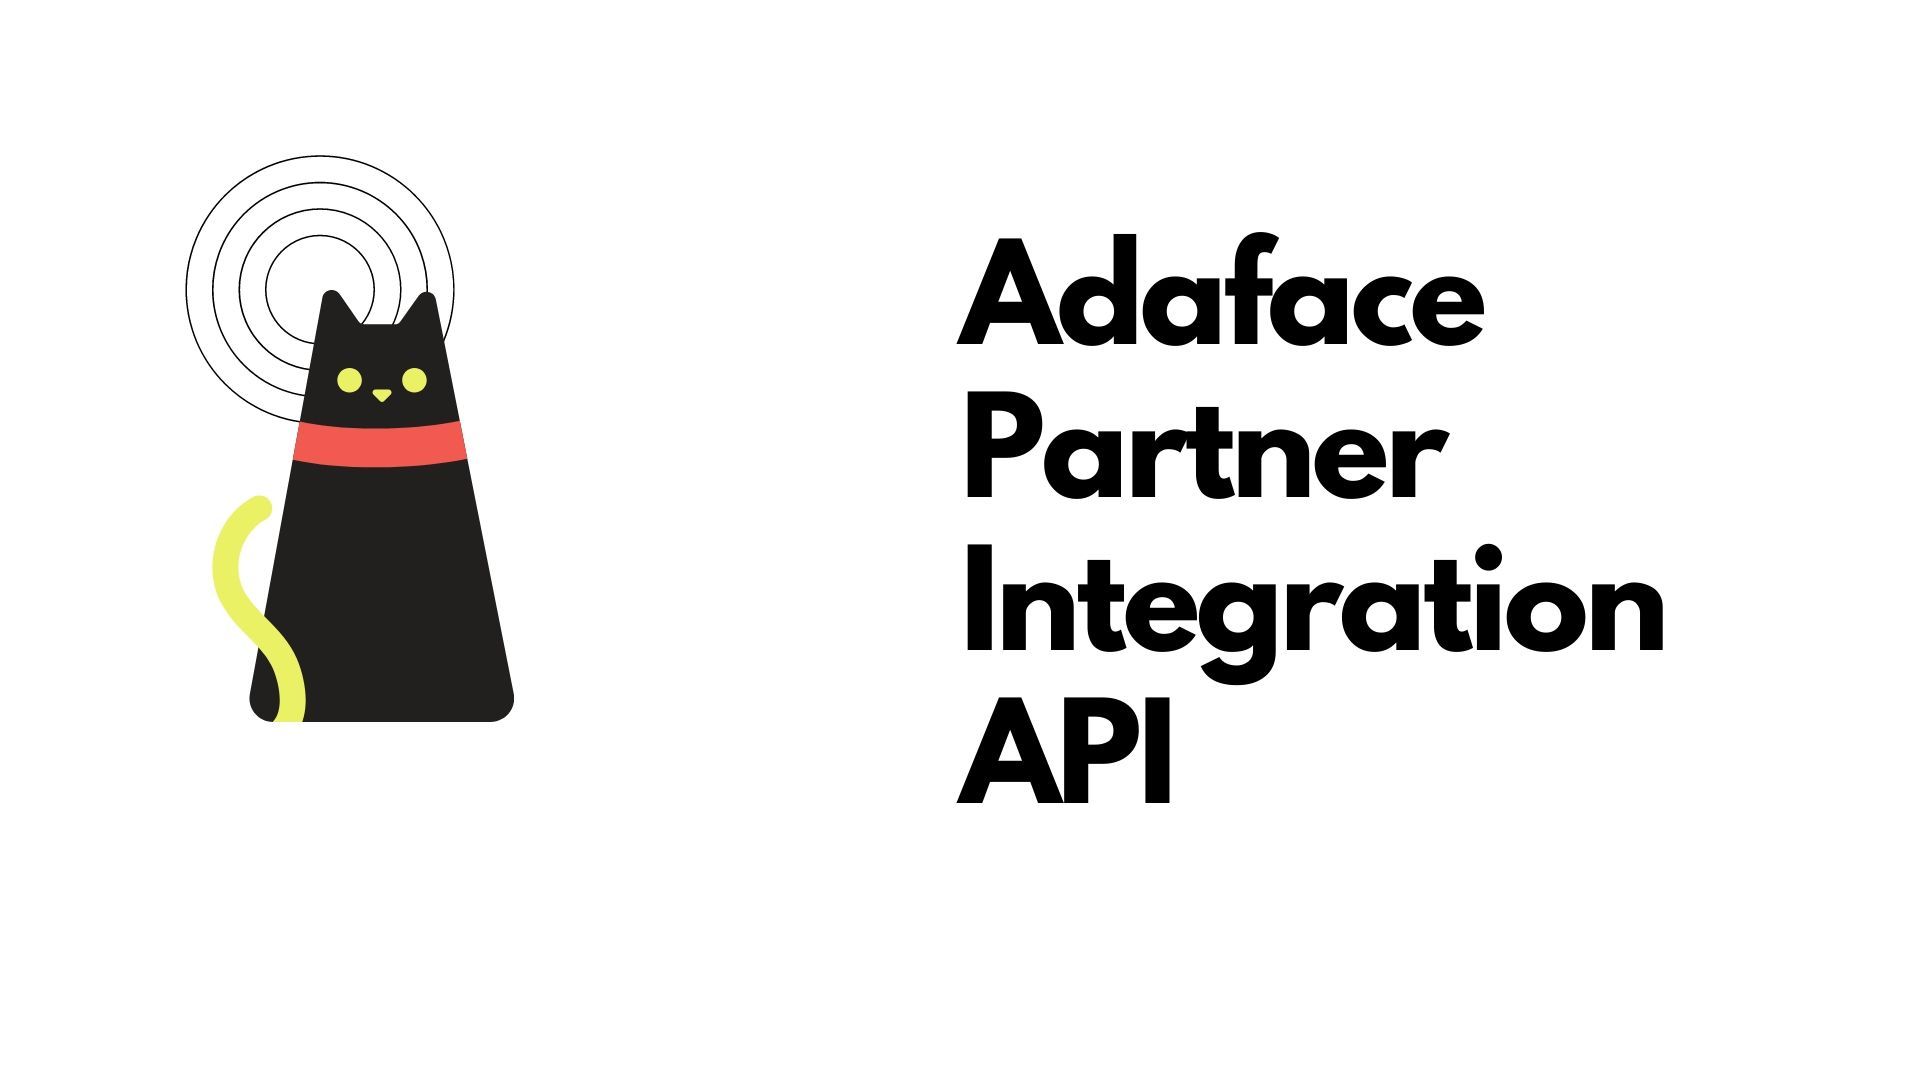 Integration Partner API image